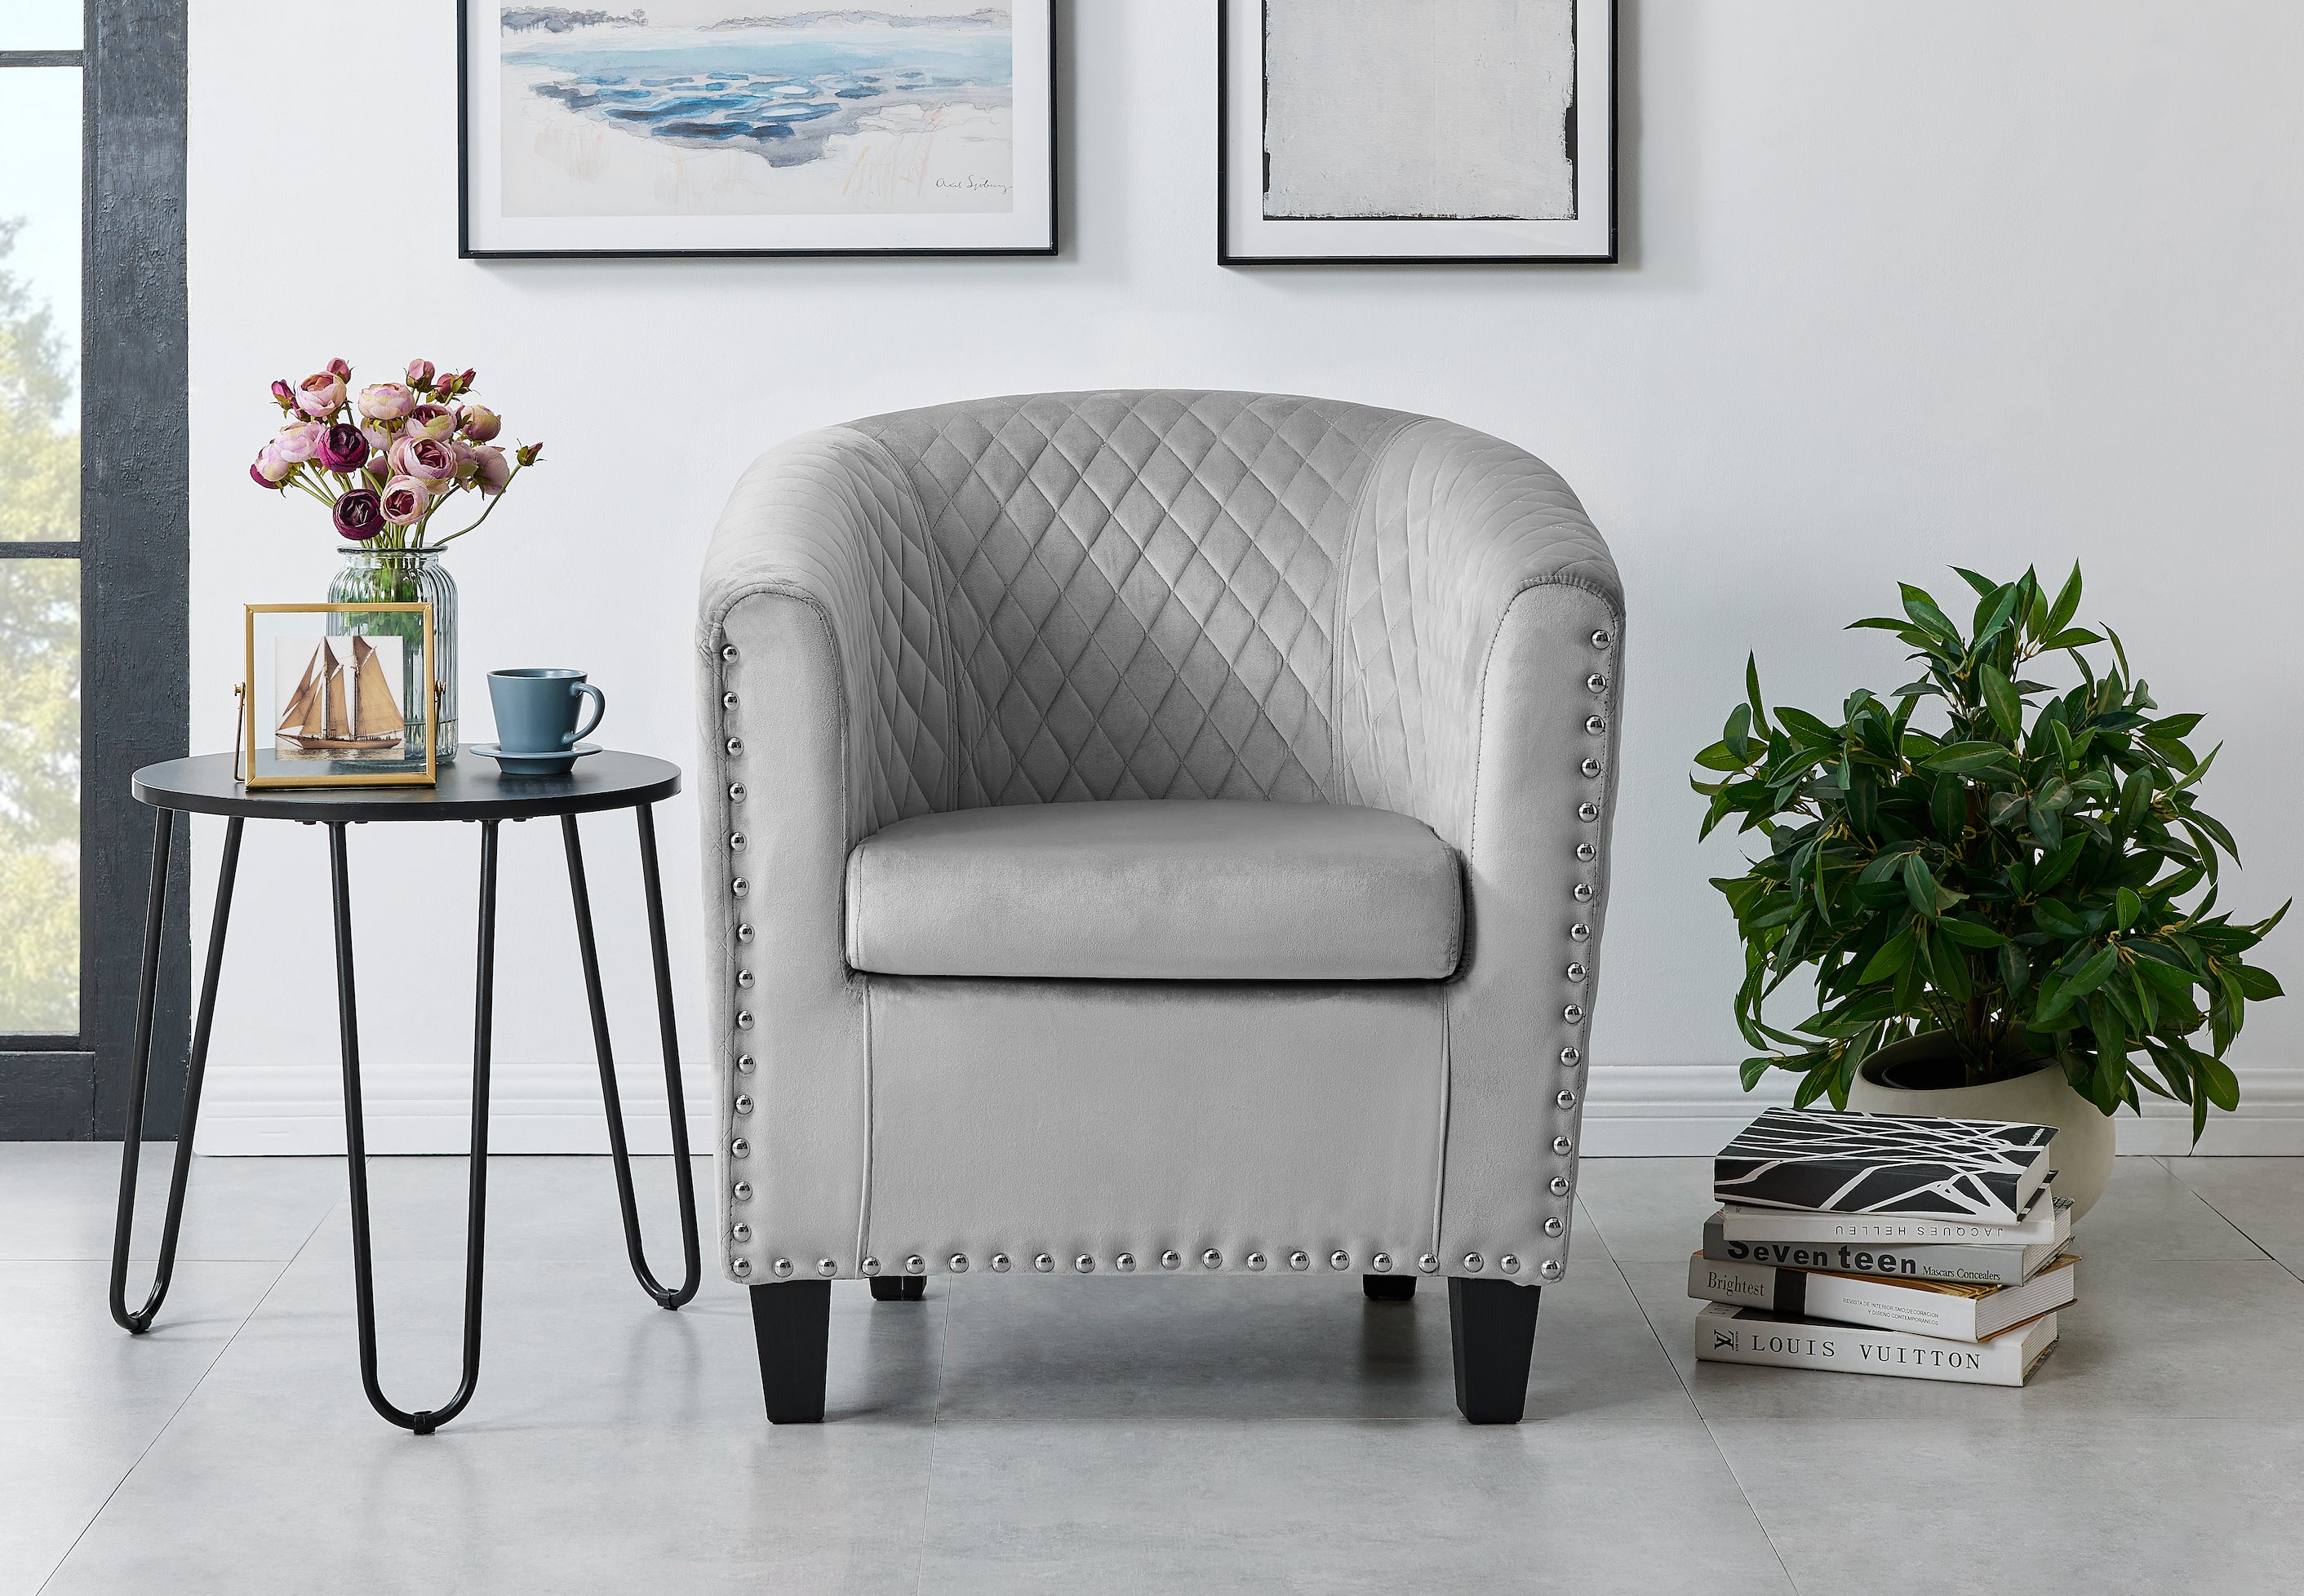 Stilo Tub Chair - Grey Bravich LTD.